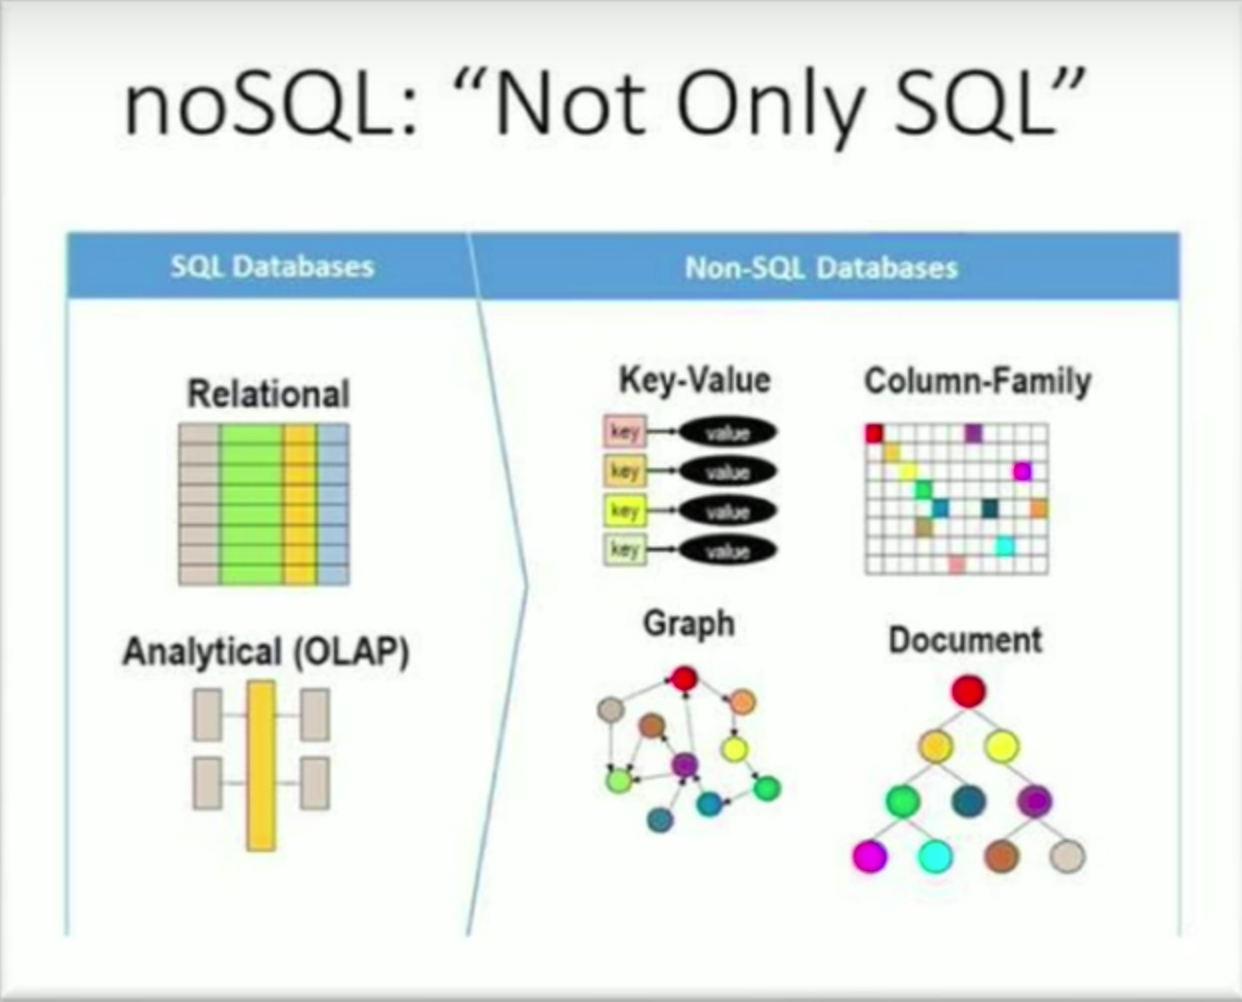 Pourquoi choisiriez-vous Nosql plutôt que SQL ?